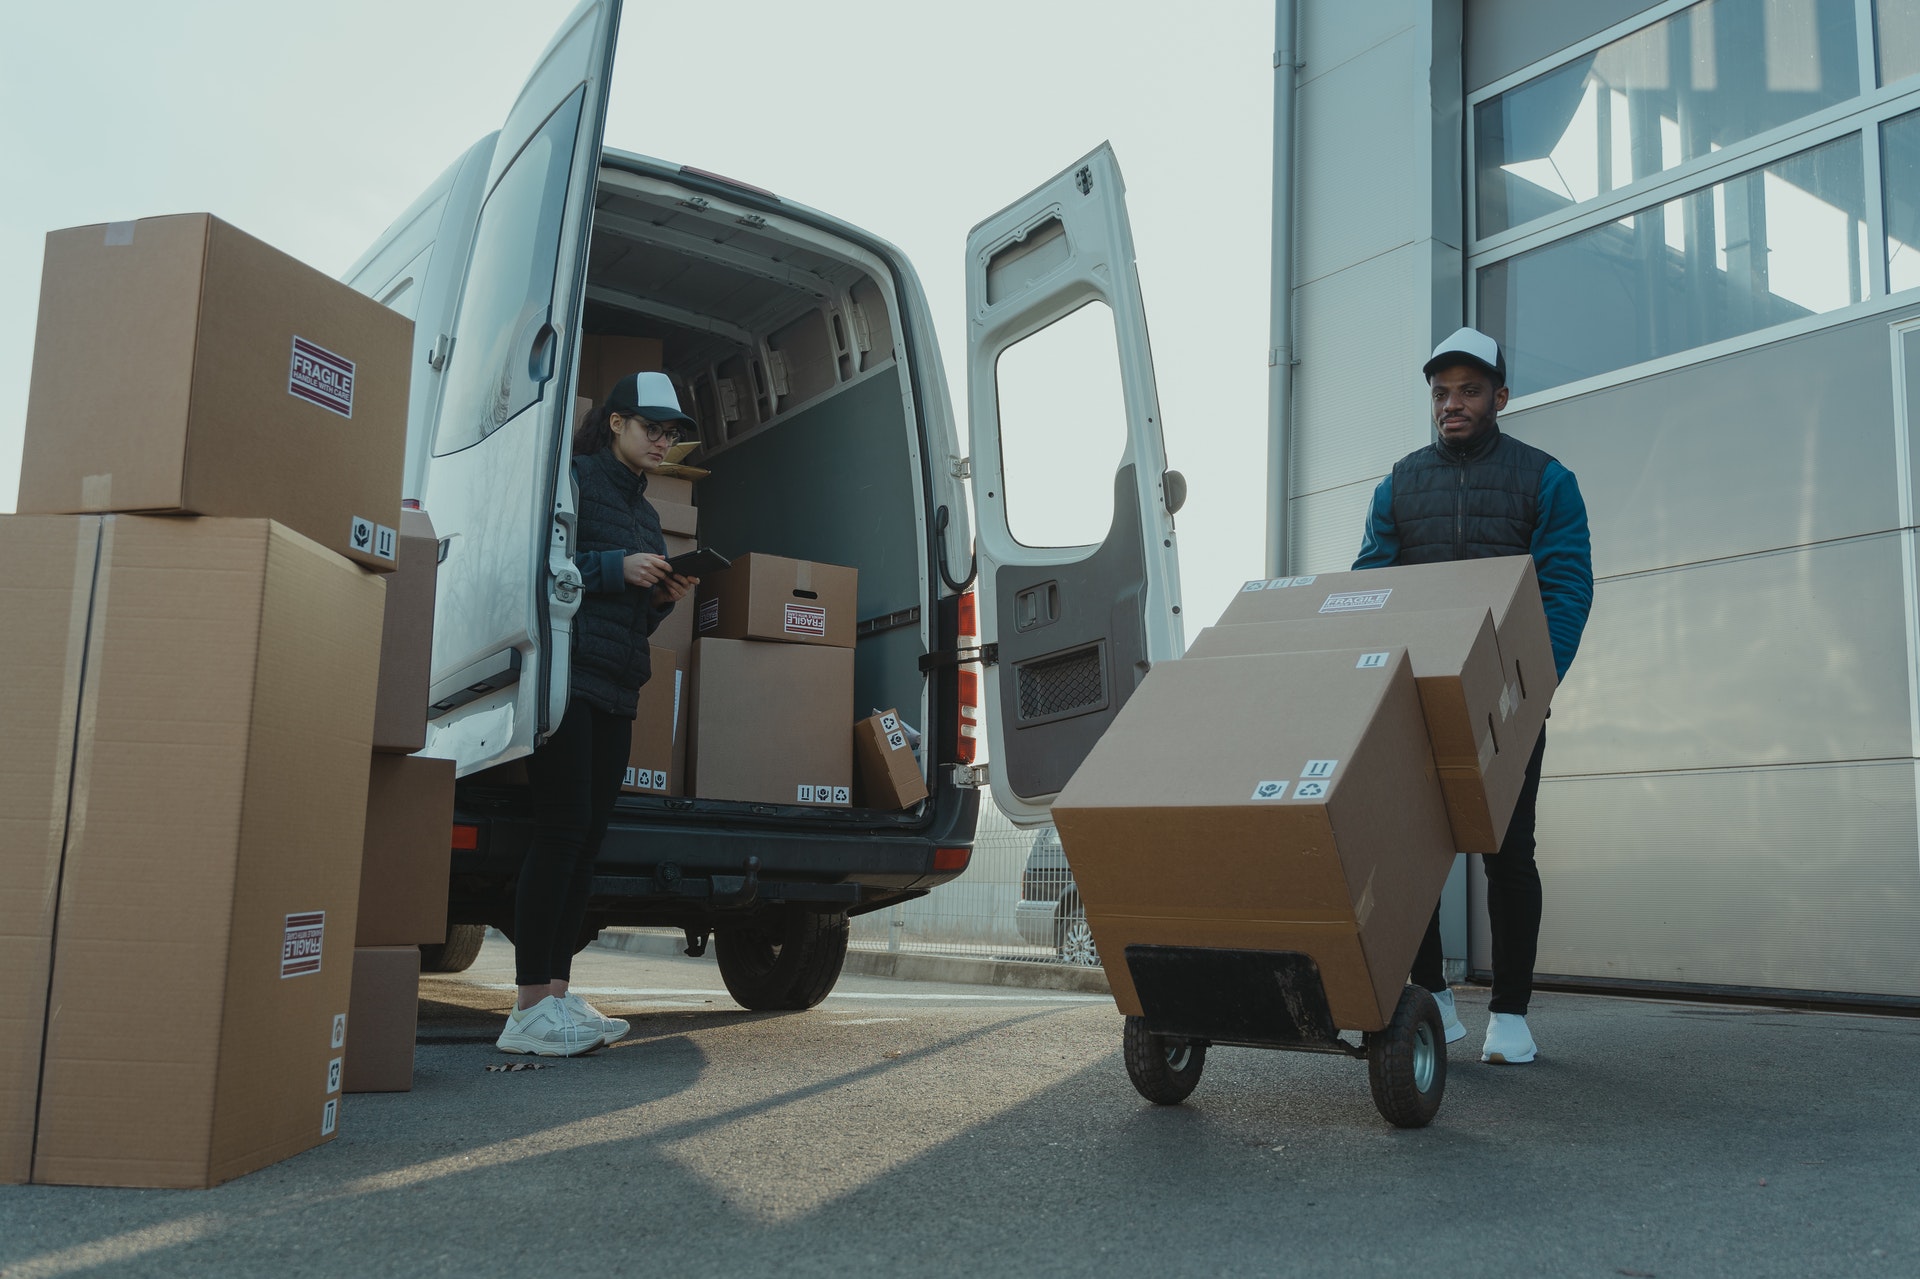 Vemos dois entregadores carregando um veículo com caixas para entrega (imagem ilustrativa).